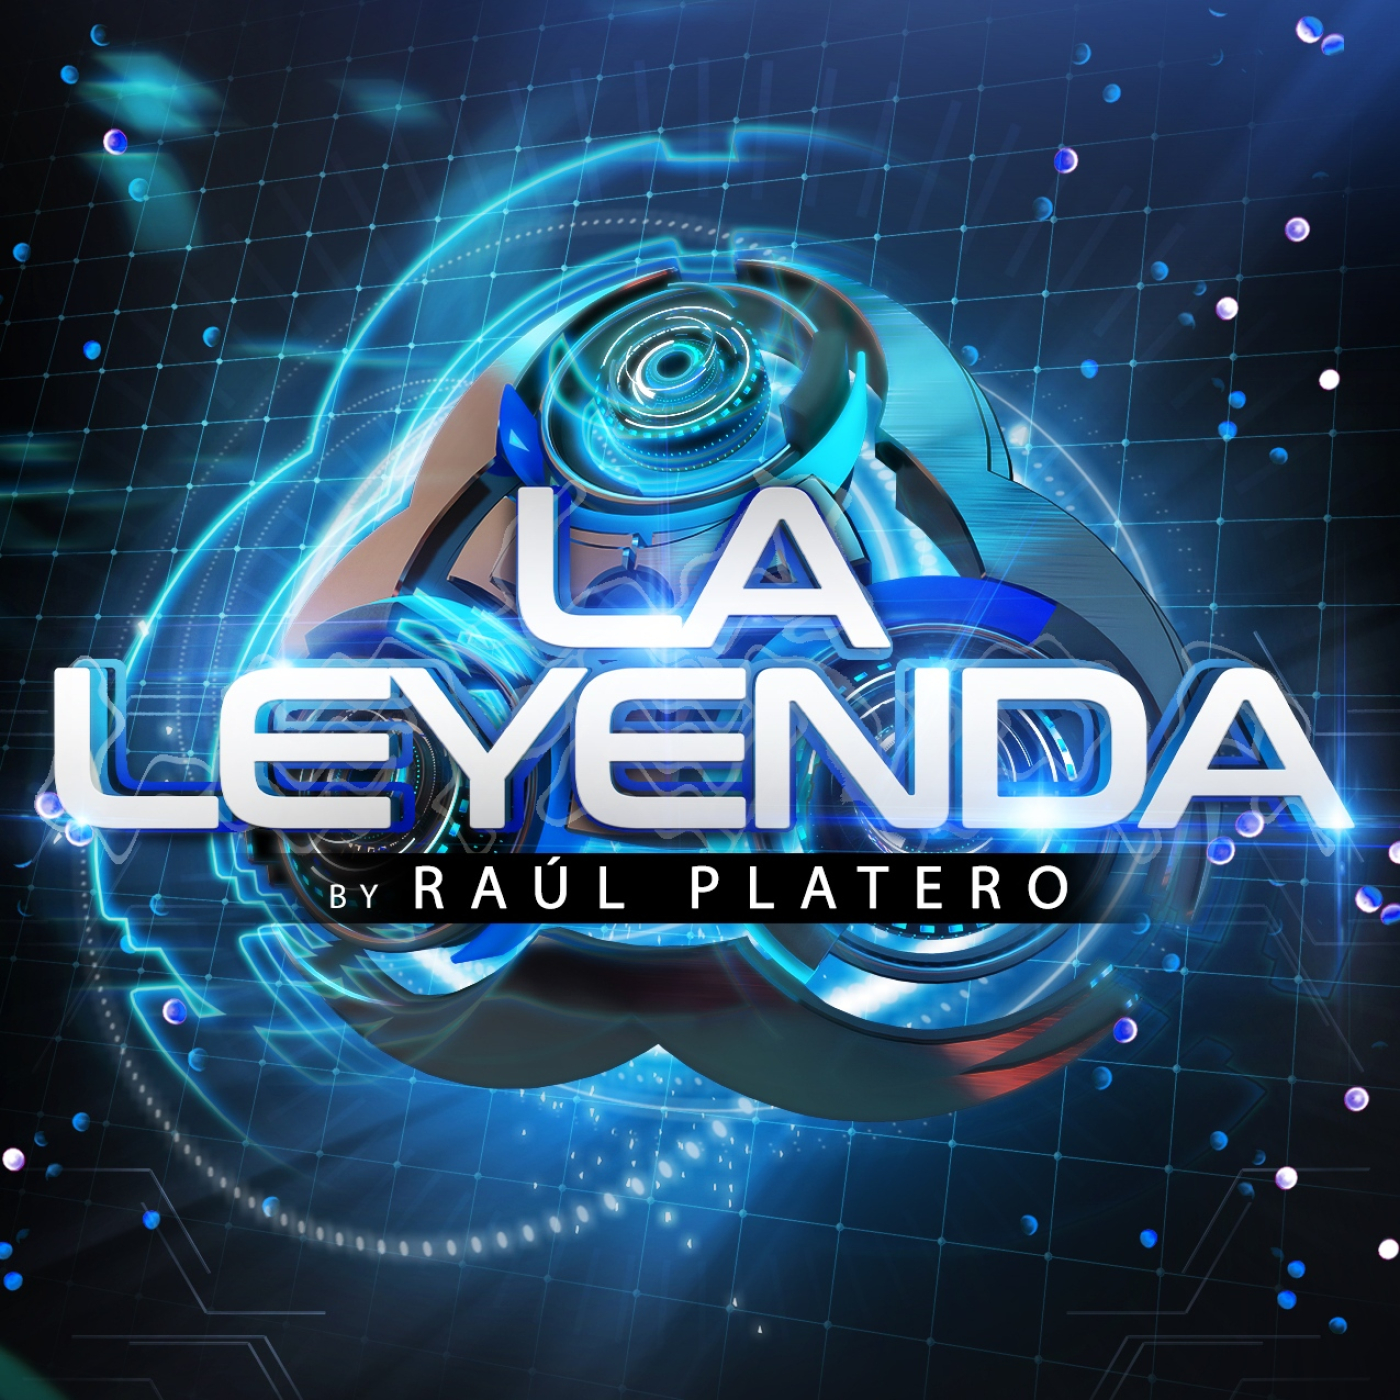 LA LEYENDA by RAUL PLATERO 2022 (Jueves 14 Julio)